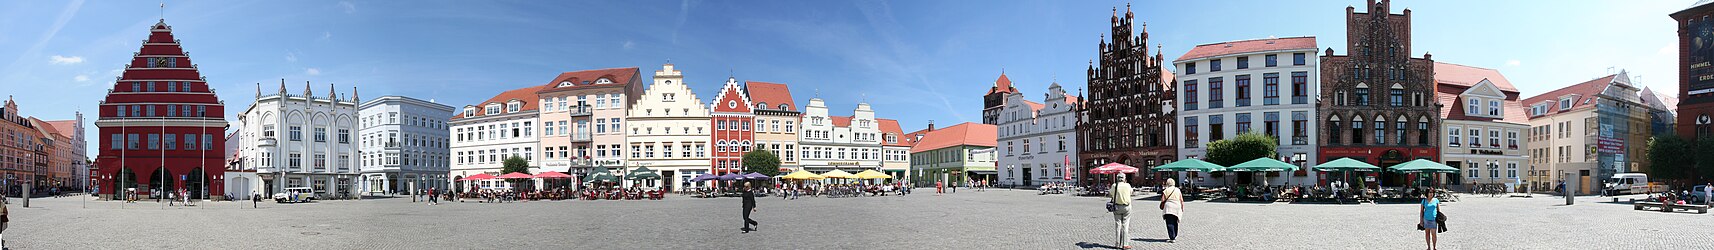 Центральная рыночная площадь (Marktplatz)